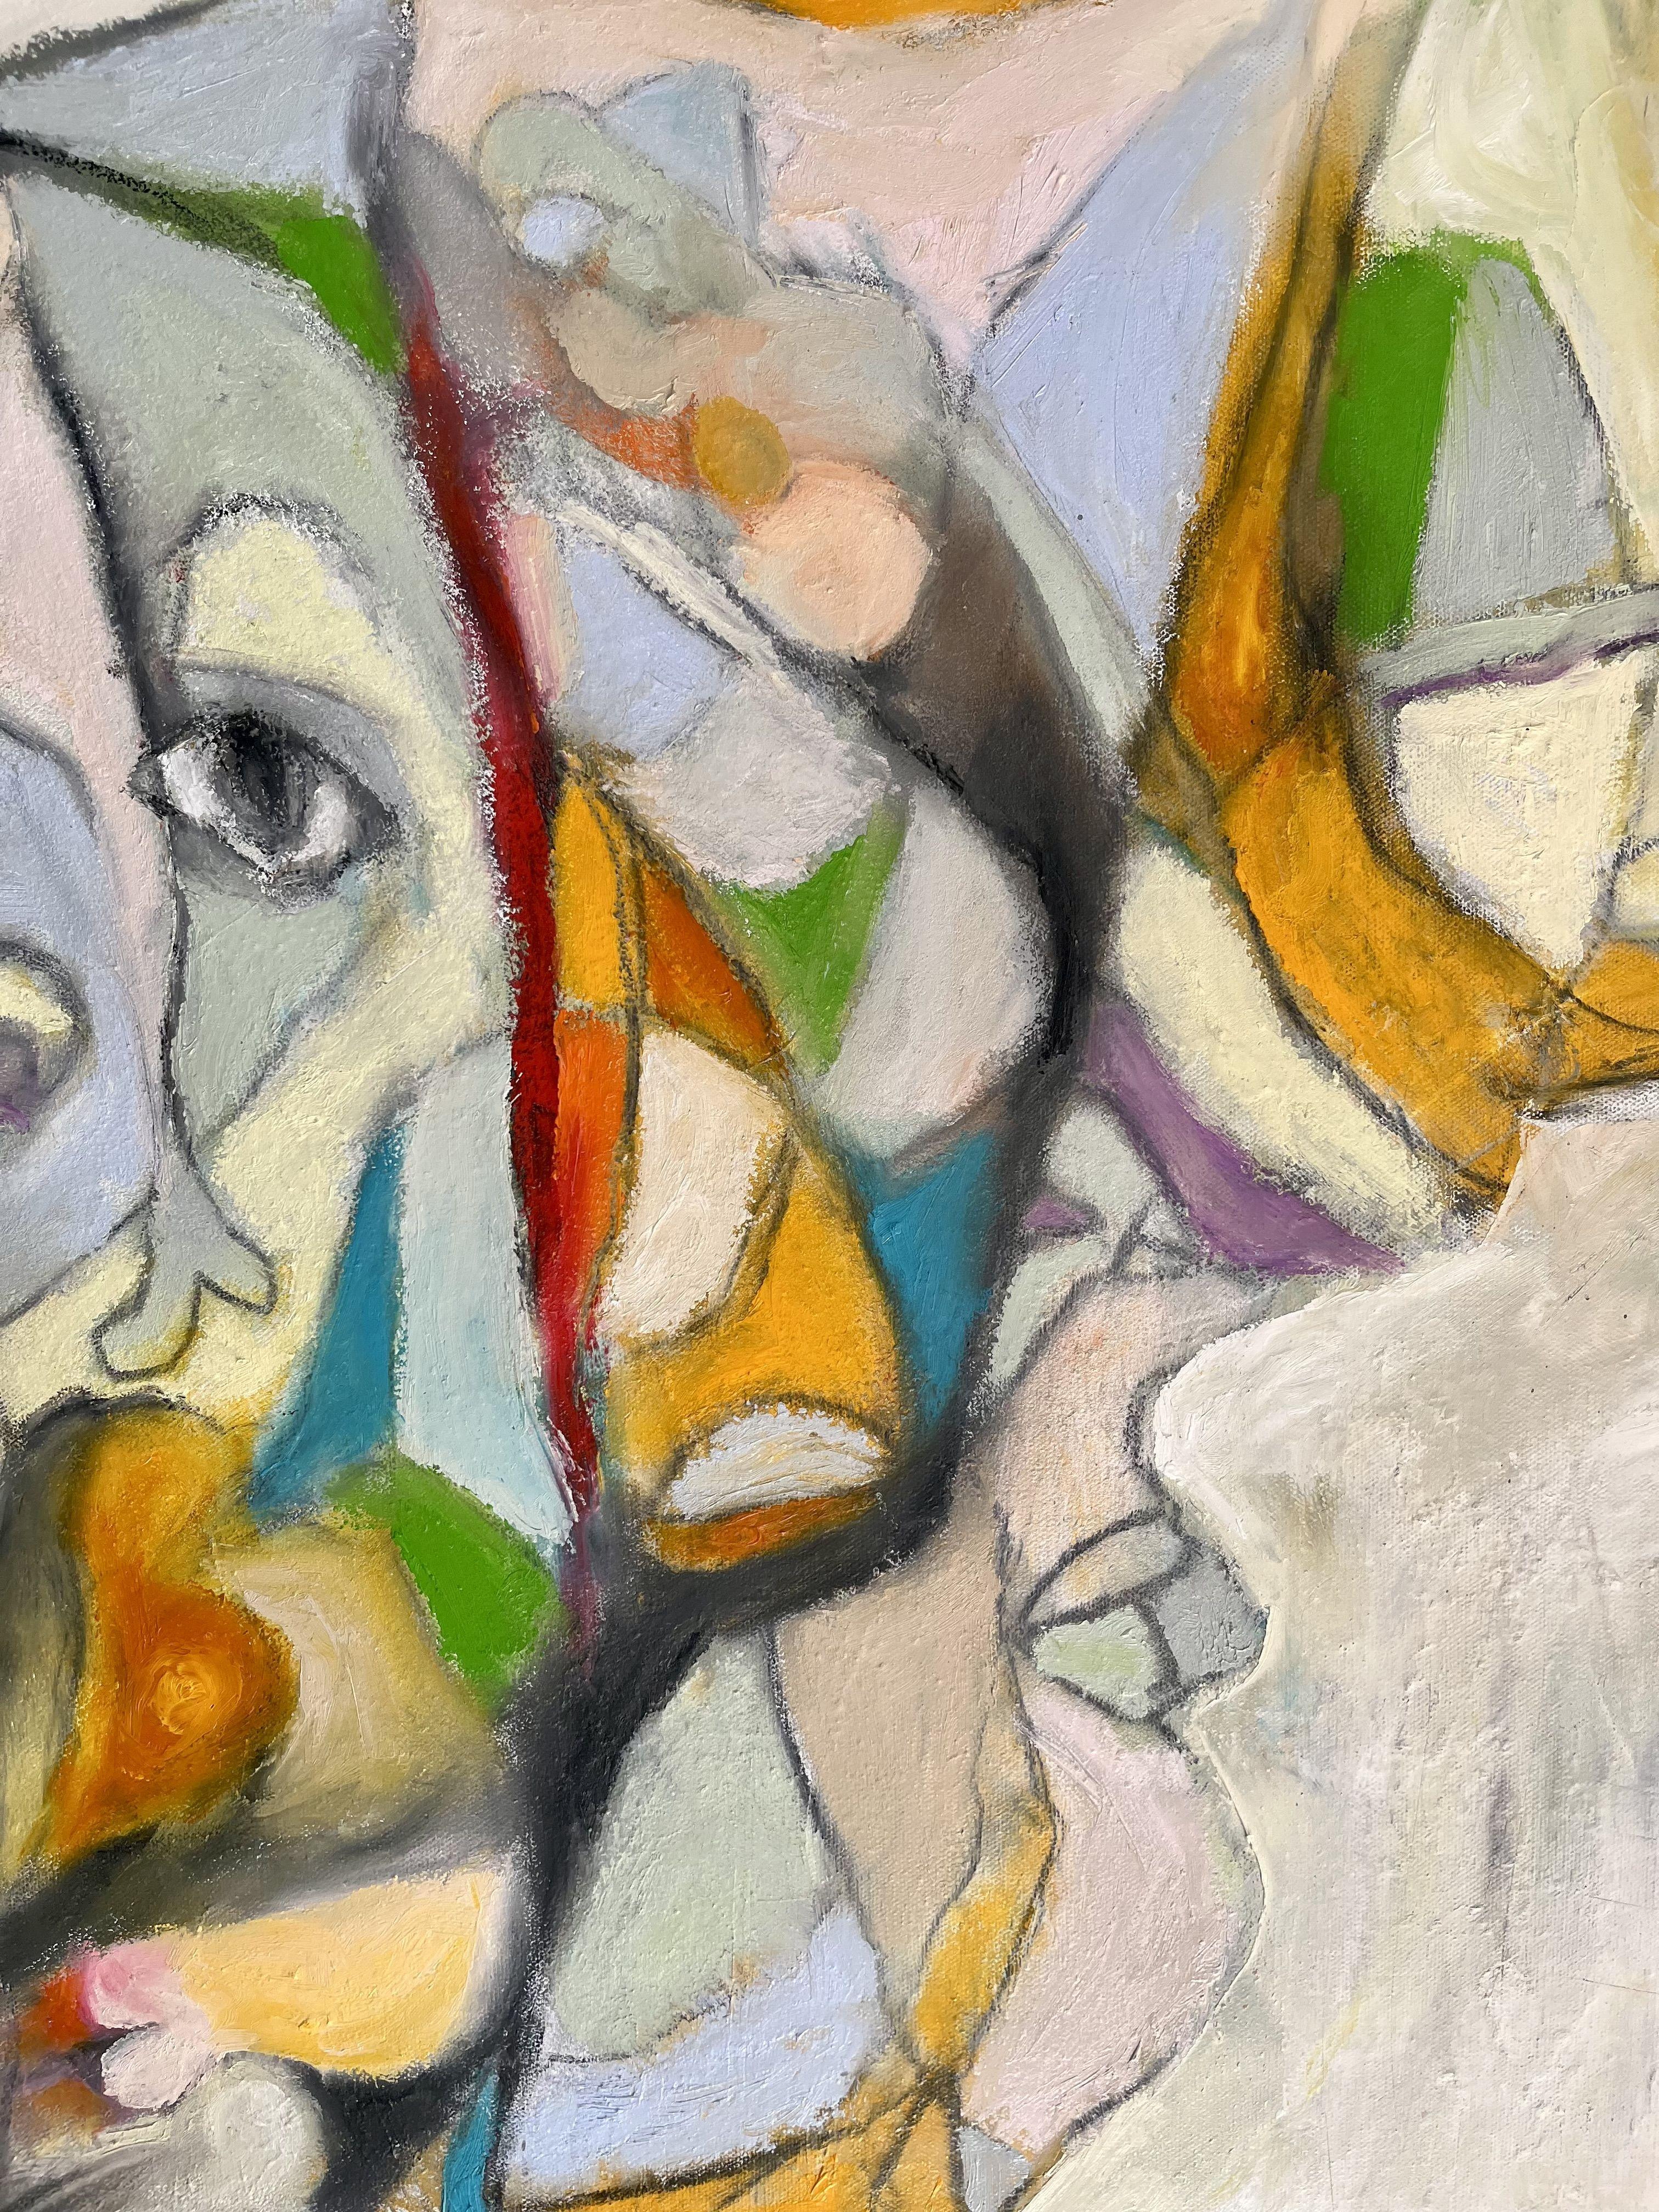 The stranger, Gemälde, Öl auf Leinwand (Abstrakter Expressionismus), Painting, von Laurent Proneur